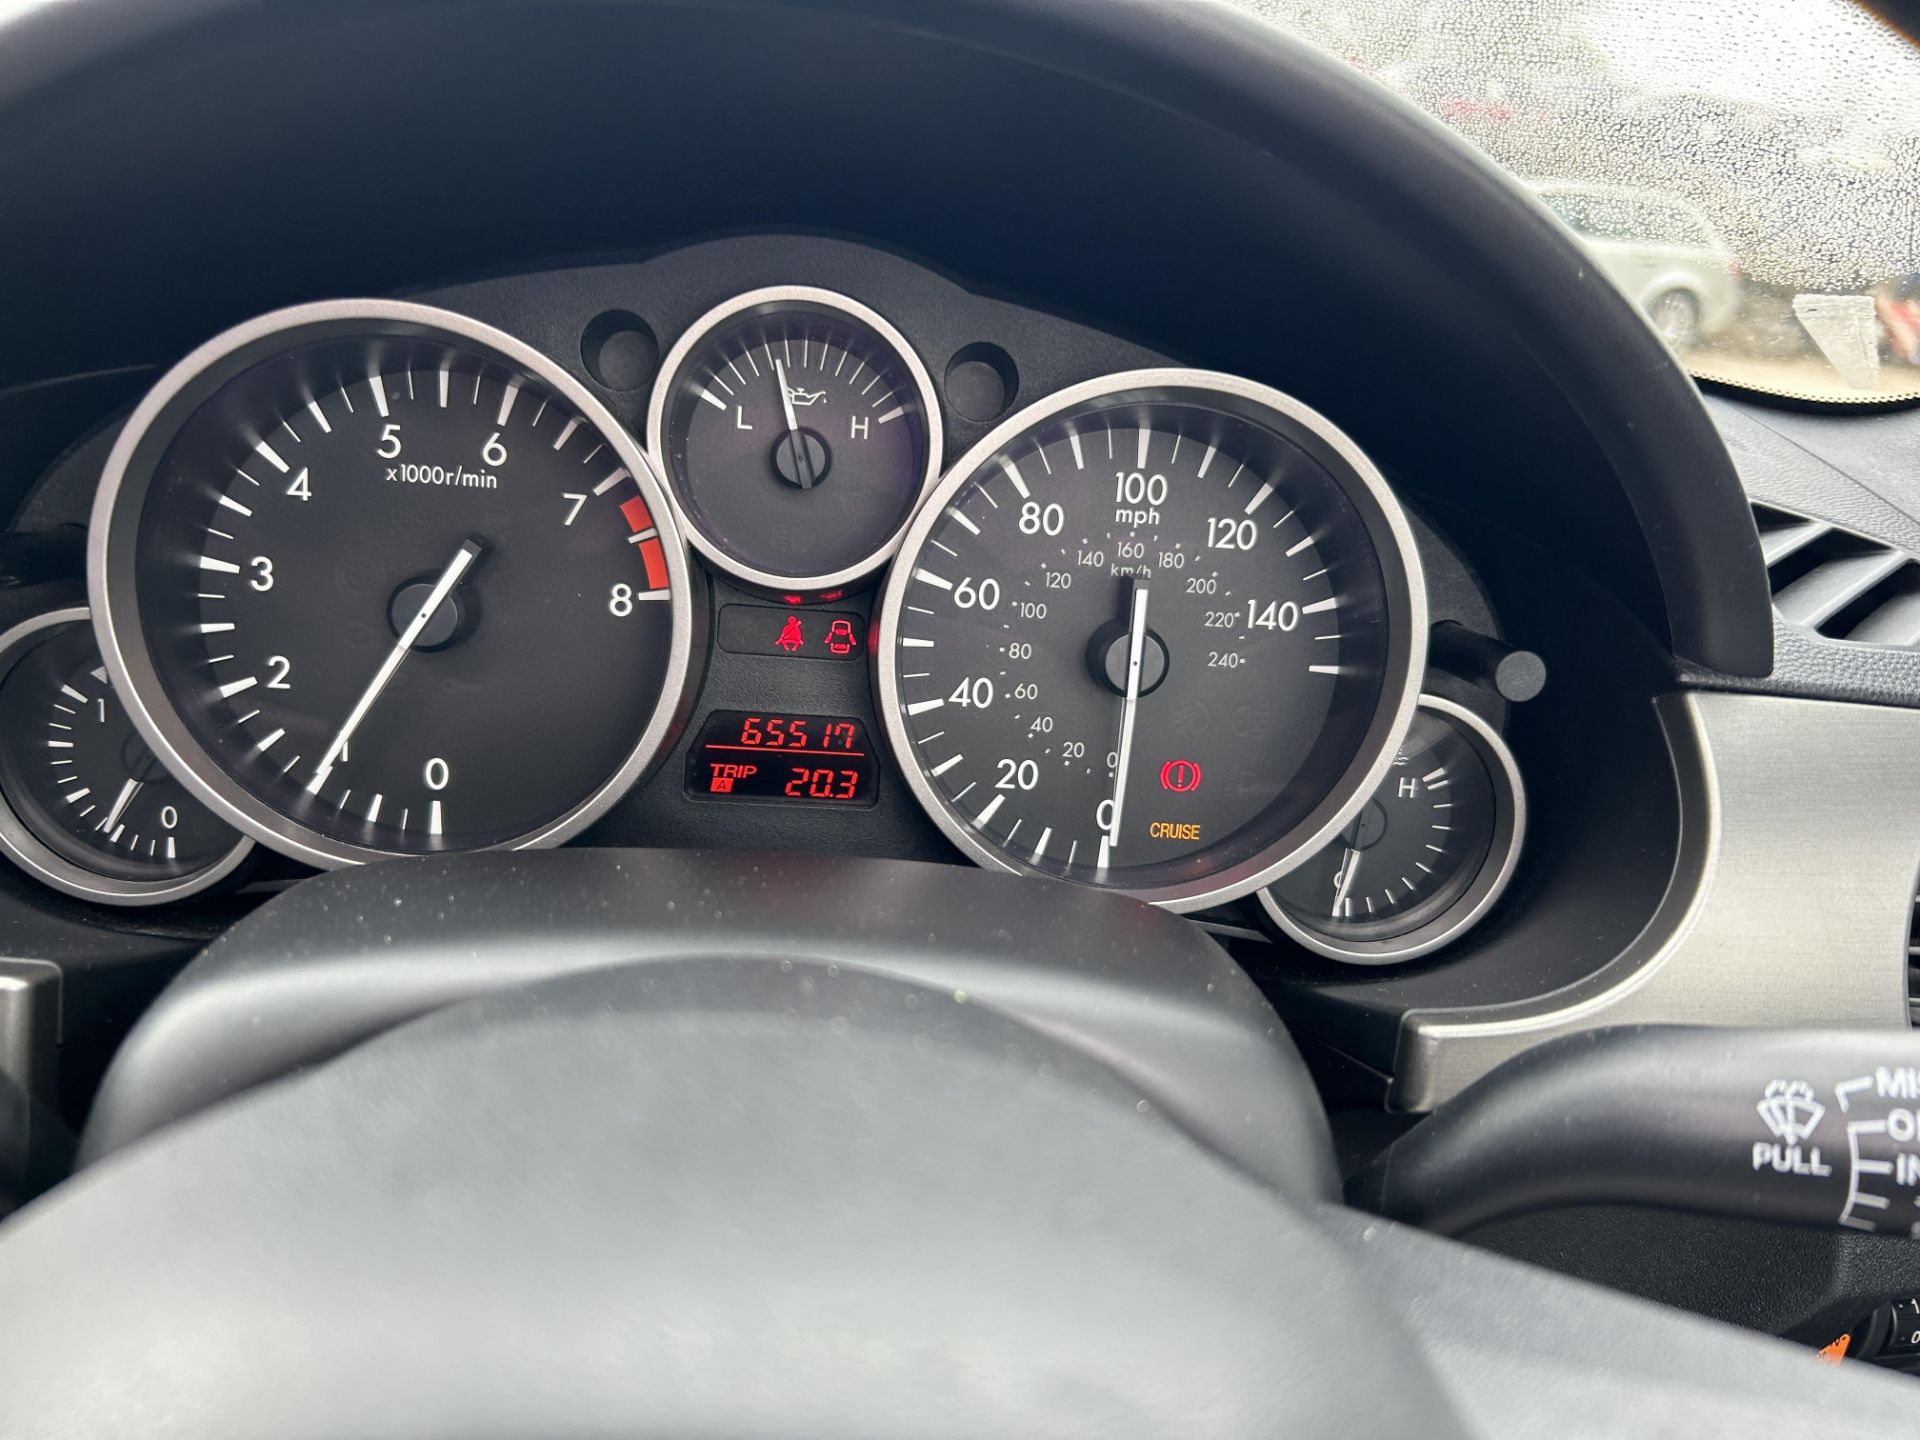 Mazda MX-5 Roadster KURO EDIT Petrol Convertible | YD13 RUJ | 65,517 Miles - Image 12 of 12